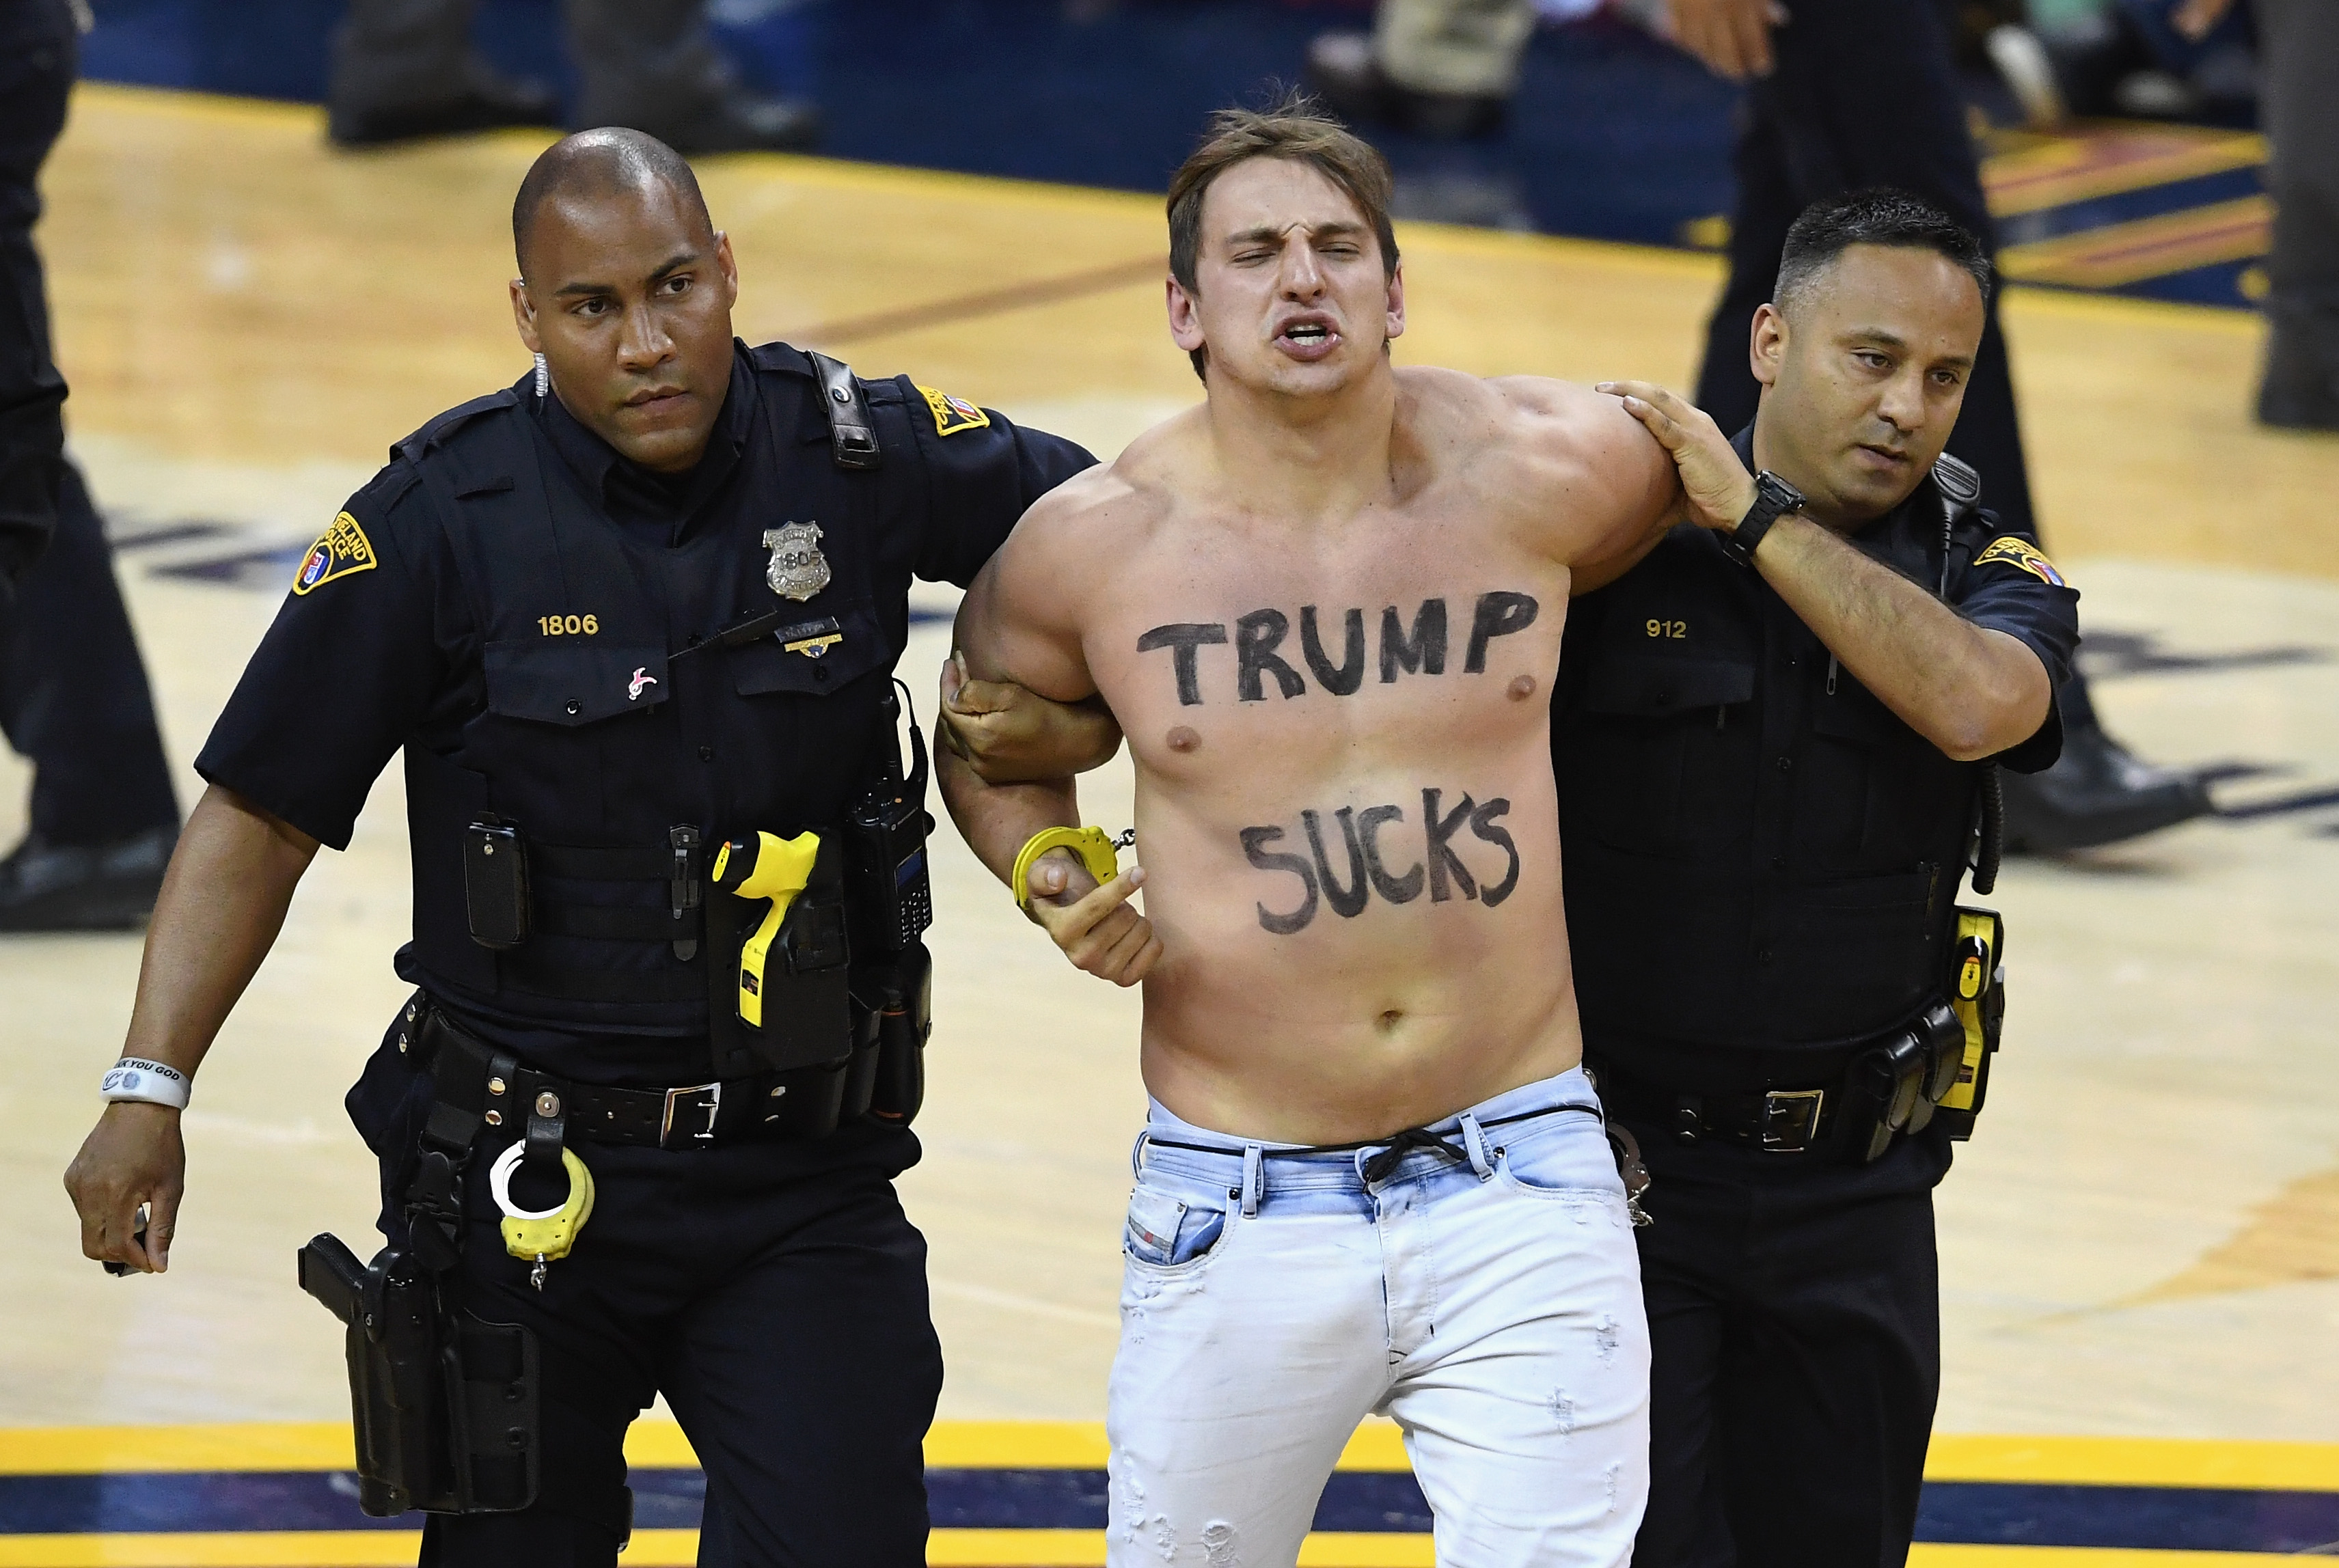 Trump sucks! Az NBA döntőjén rohant be a pályára félmeztelen férfi